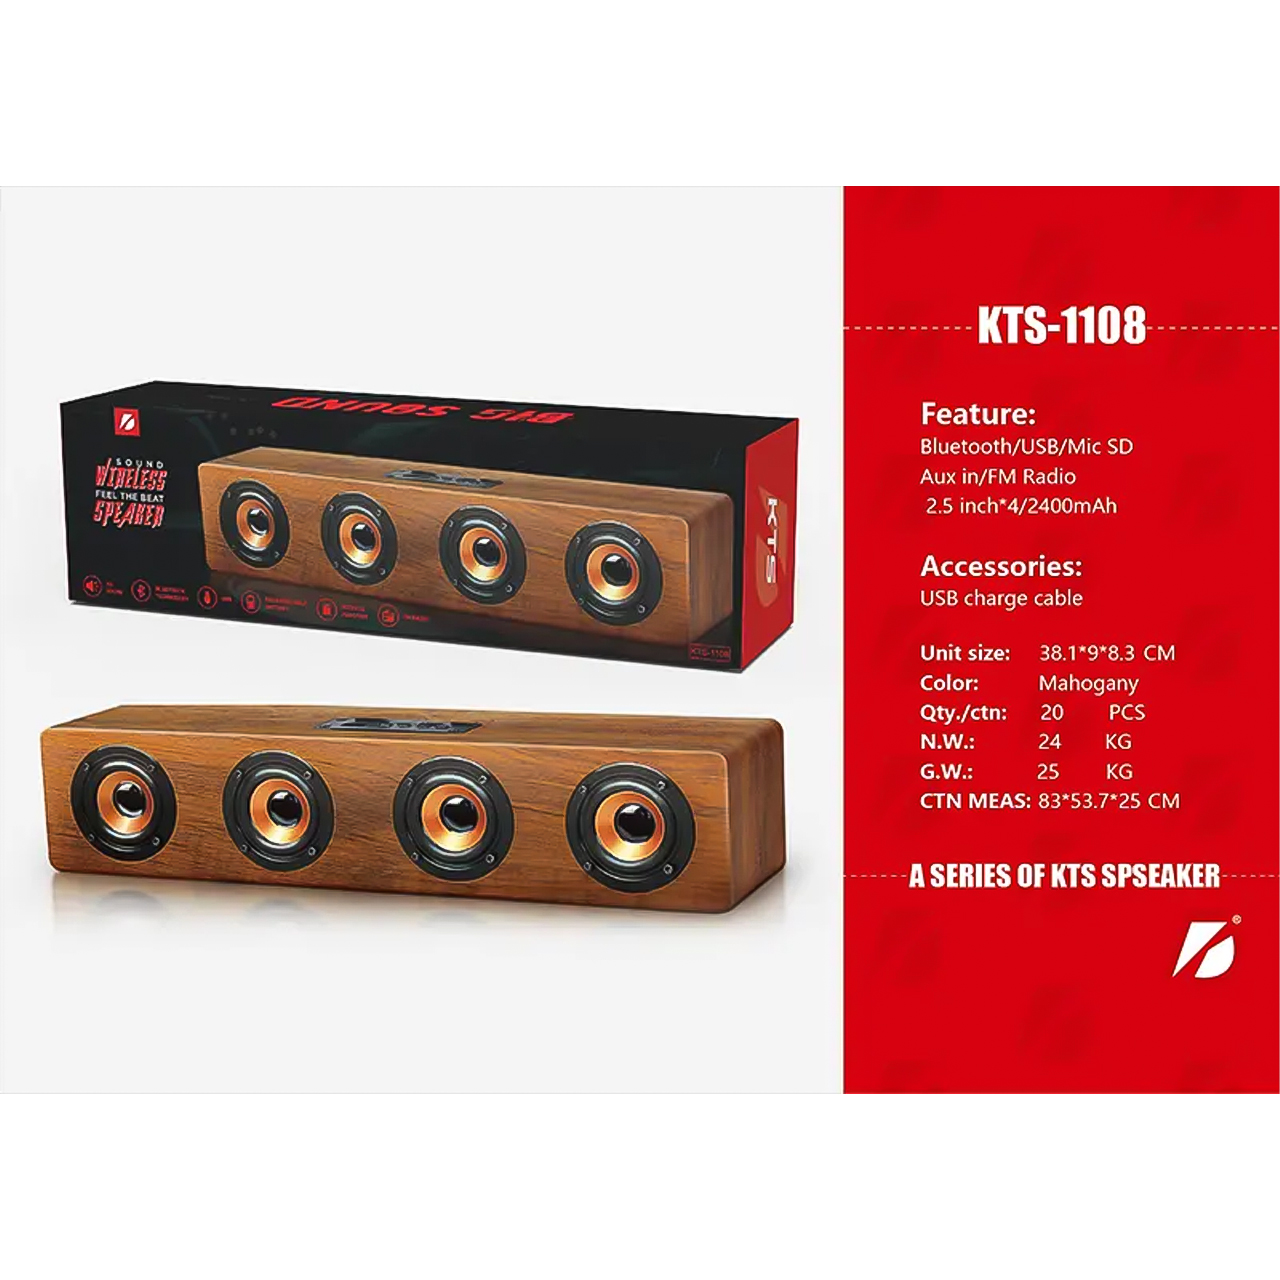 Loa gỗ Bluetooth Vinetteam KTS-1108 Hifi 20W Loa siêu trầm không dây âm thanh nổi, có 4 loa nghe nhạc cực hay, hỗ trợ cổng USB, FM, thẻ nhớ Micro SD - hàng chính hãng